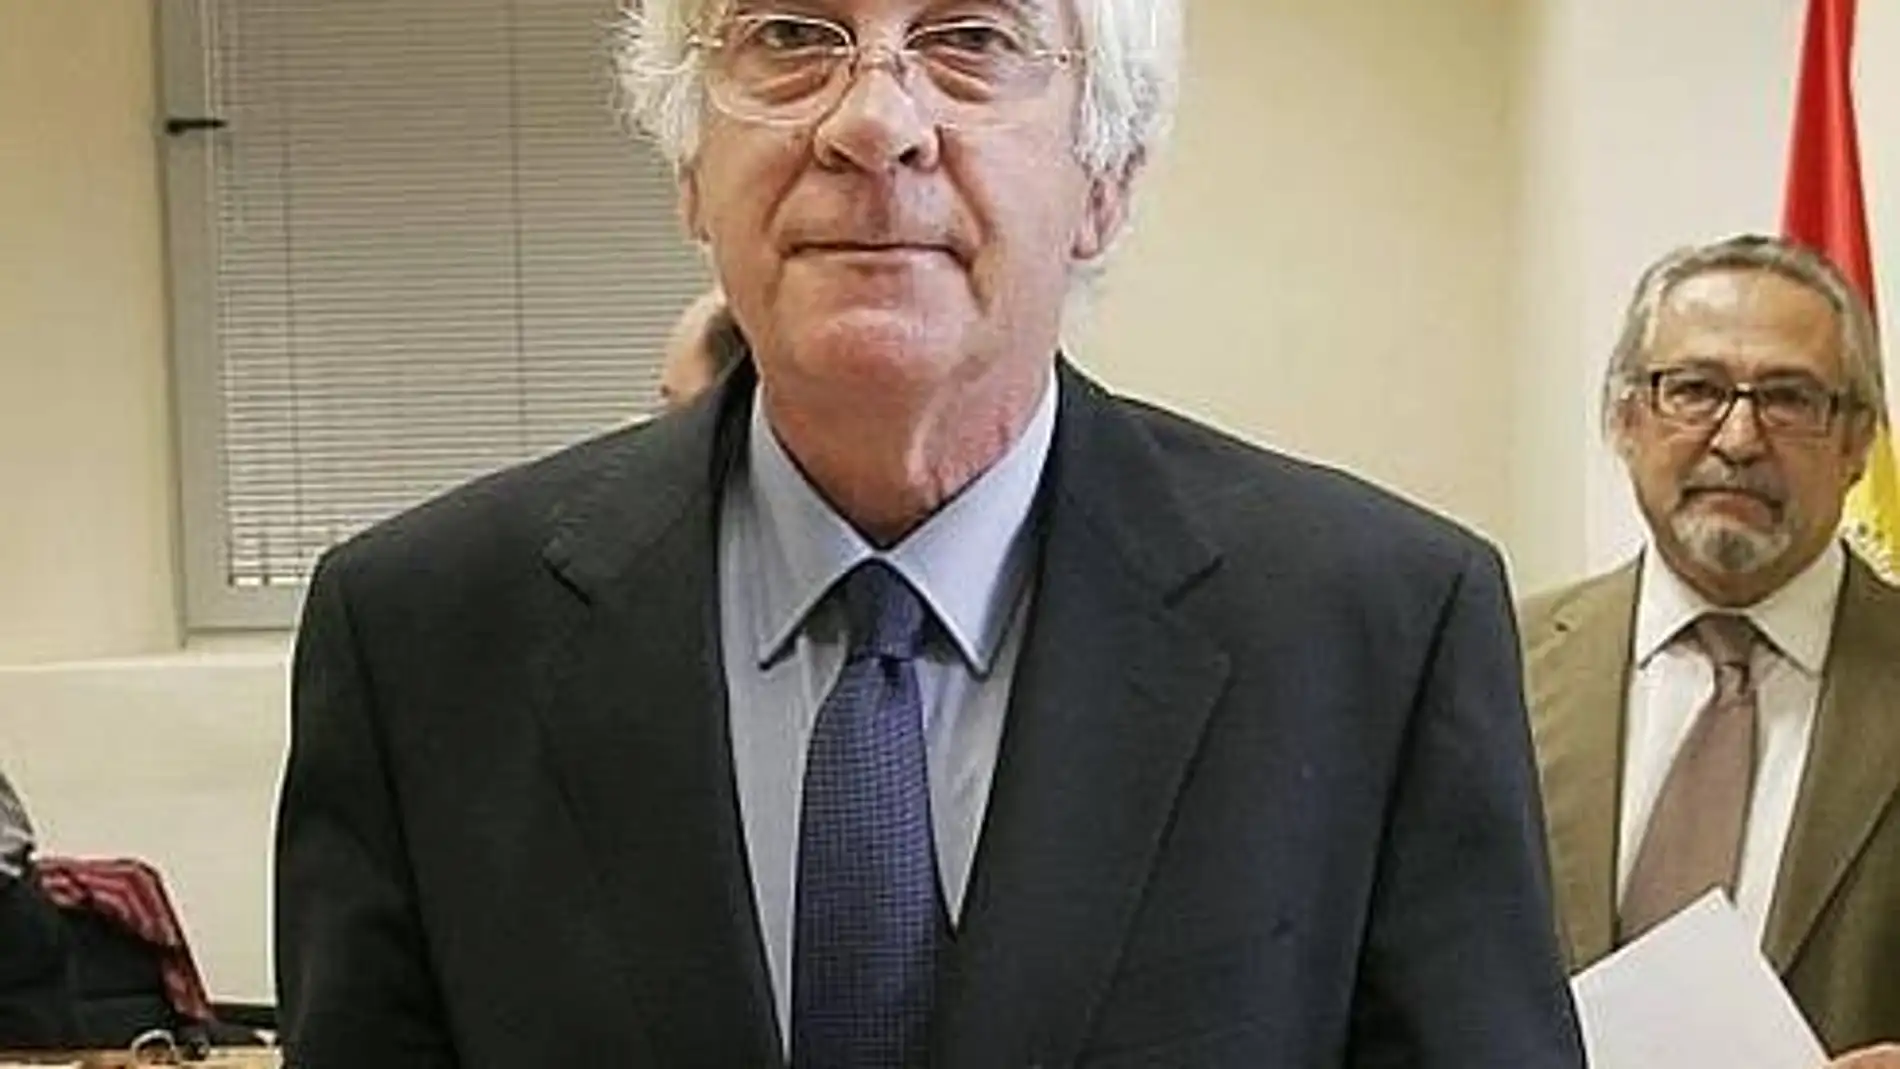 Fallece el pacense Julio Márquez de Prado, presidente del TSJEx entre enero de 2004 y enero de 2020